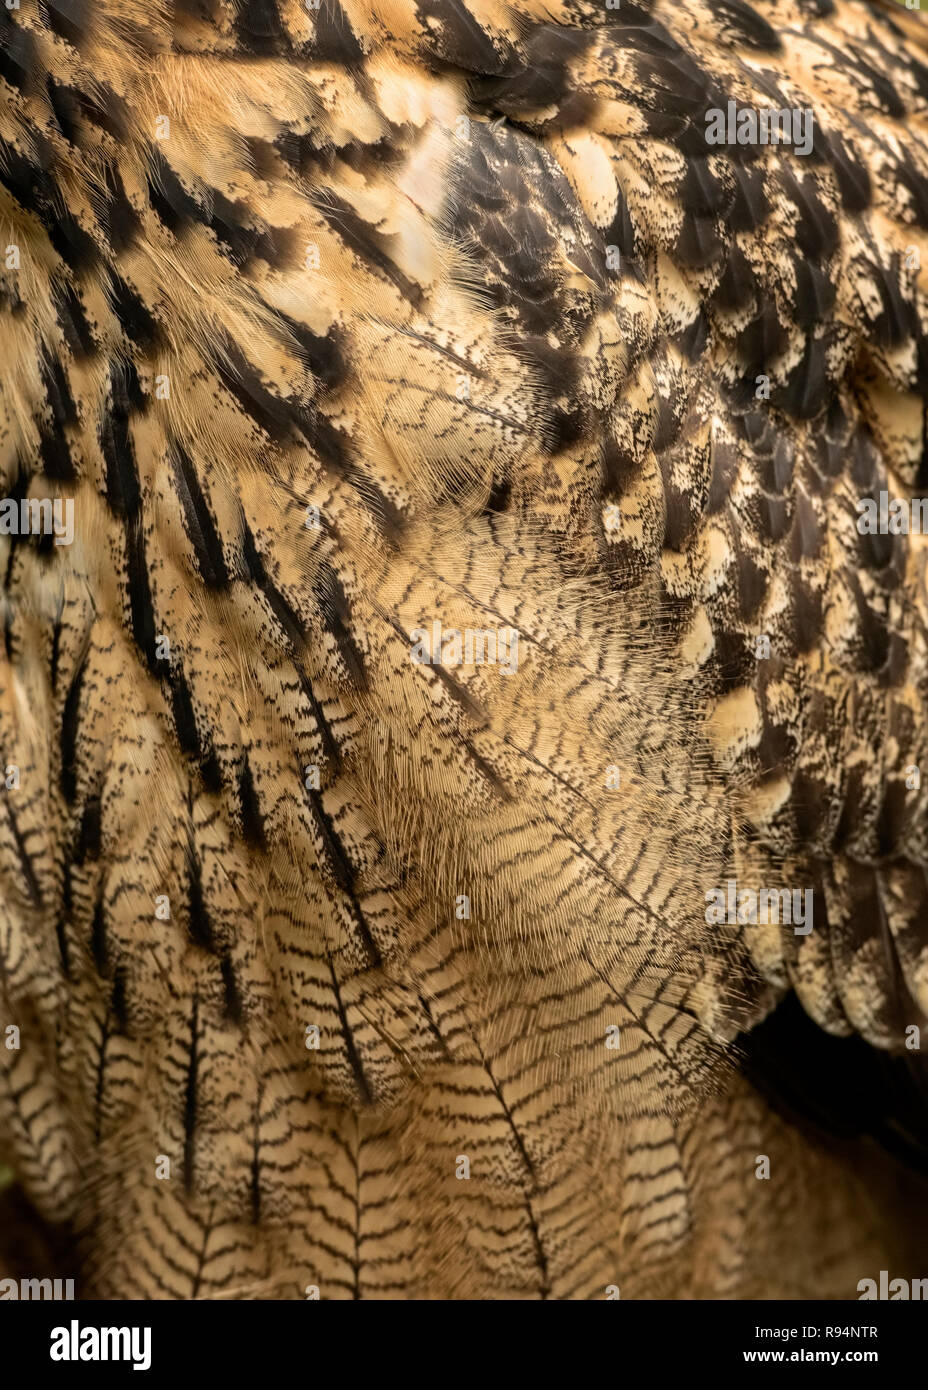 UK, Sherwood Forest, Nottinghamshire - October 2018: Eurasion Eagle Owl, close-up Stock Photo